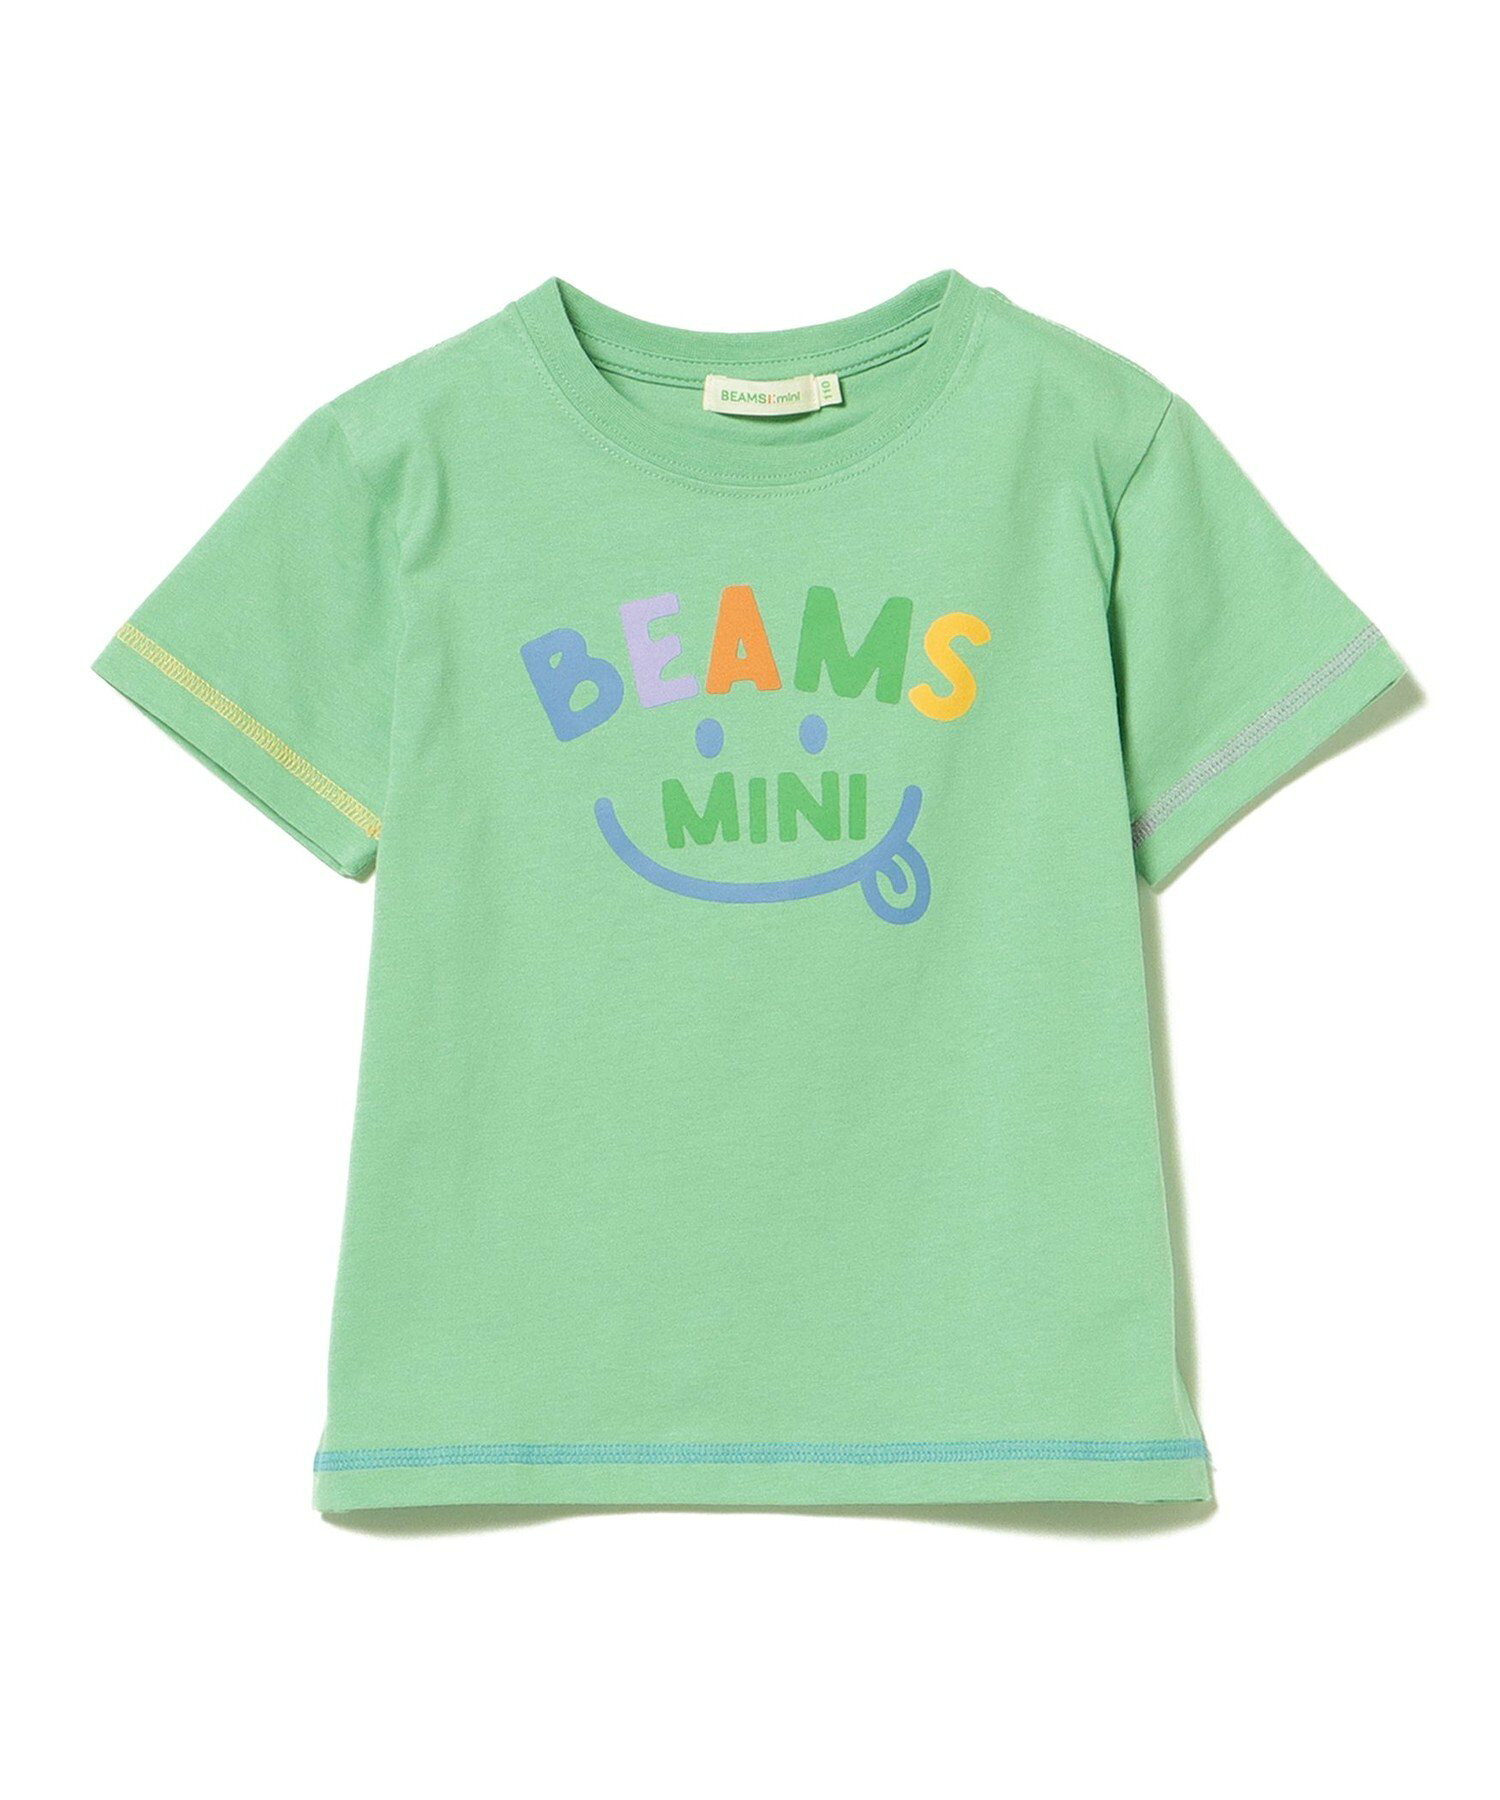 BEAMS mini / スマイル ロゴ Tシャツ 24SS(90~130cm)